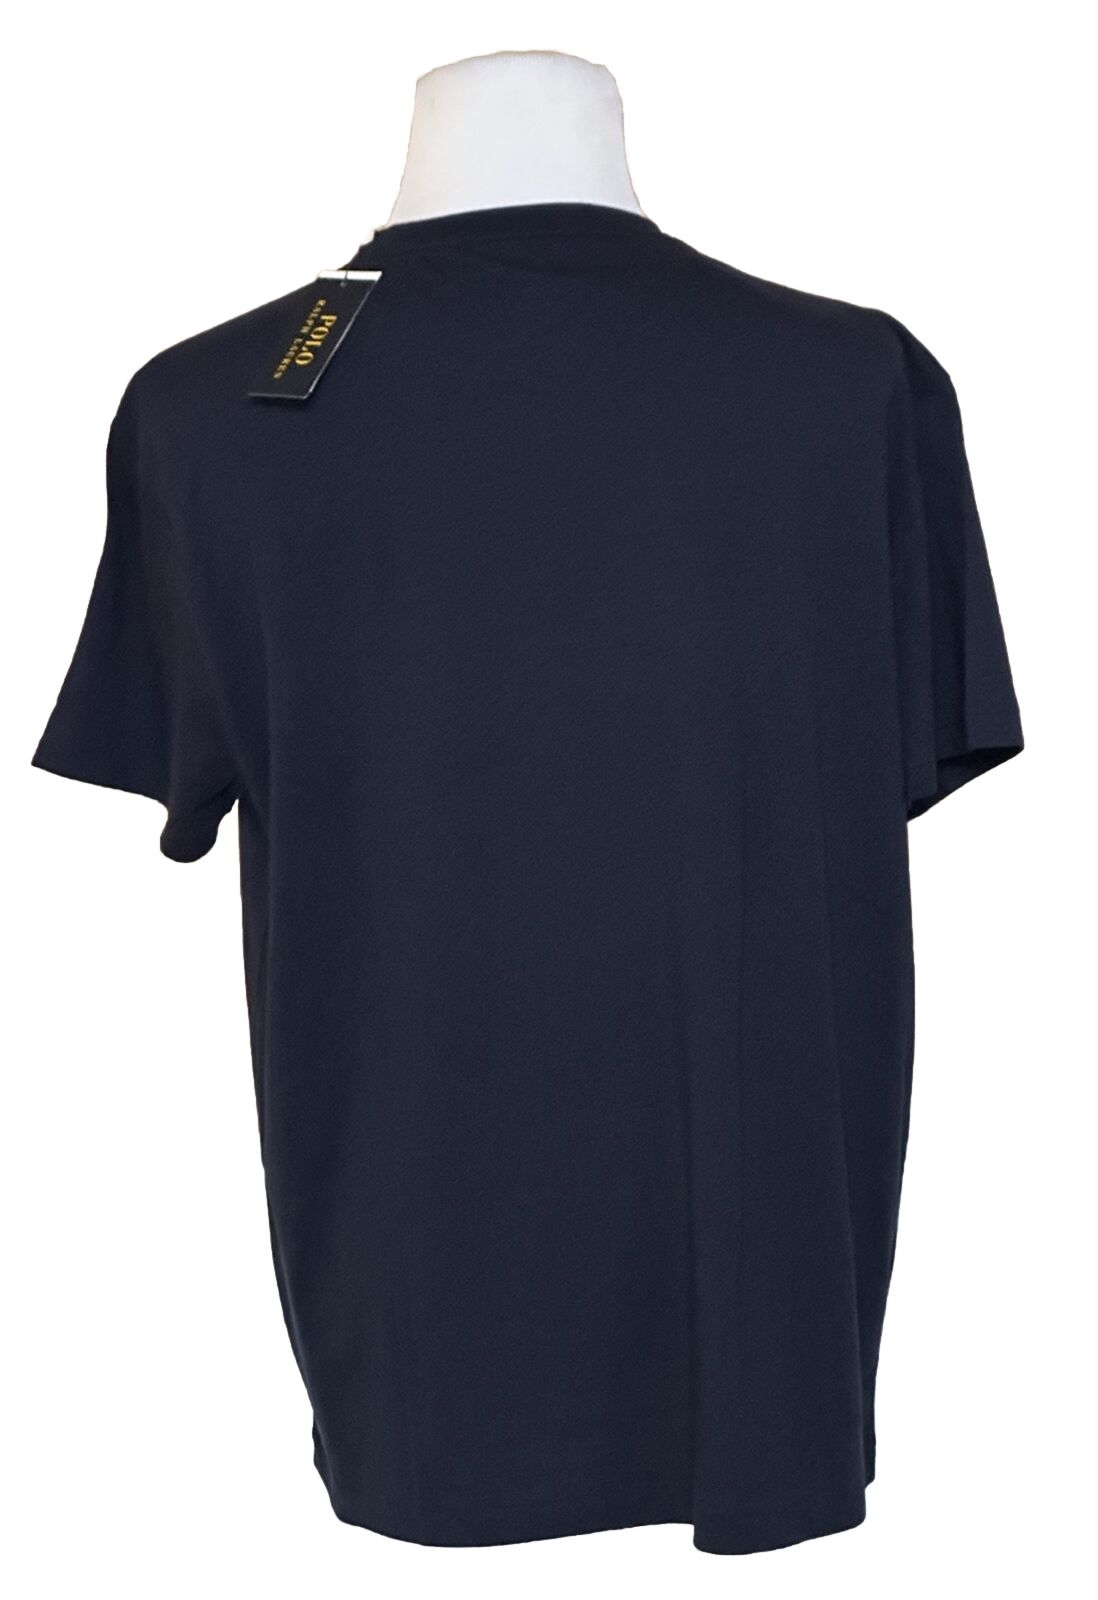 Neu mit Etikett: Polo Ralph Lauren POLO 67 Herren-T-Shirt mit kurzen Ärmeln, Blau, Größe L